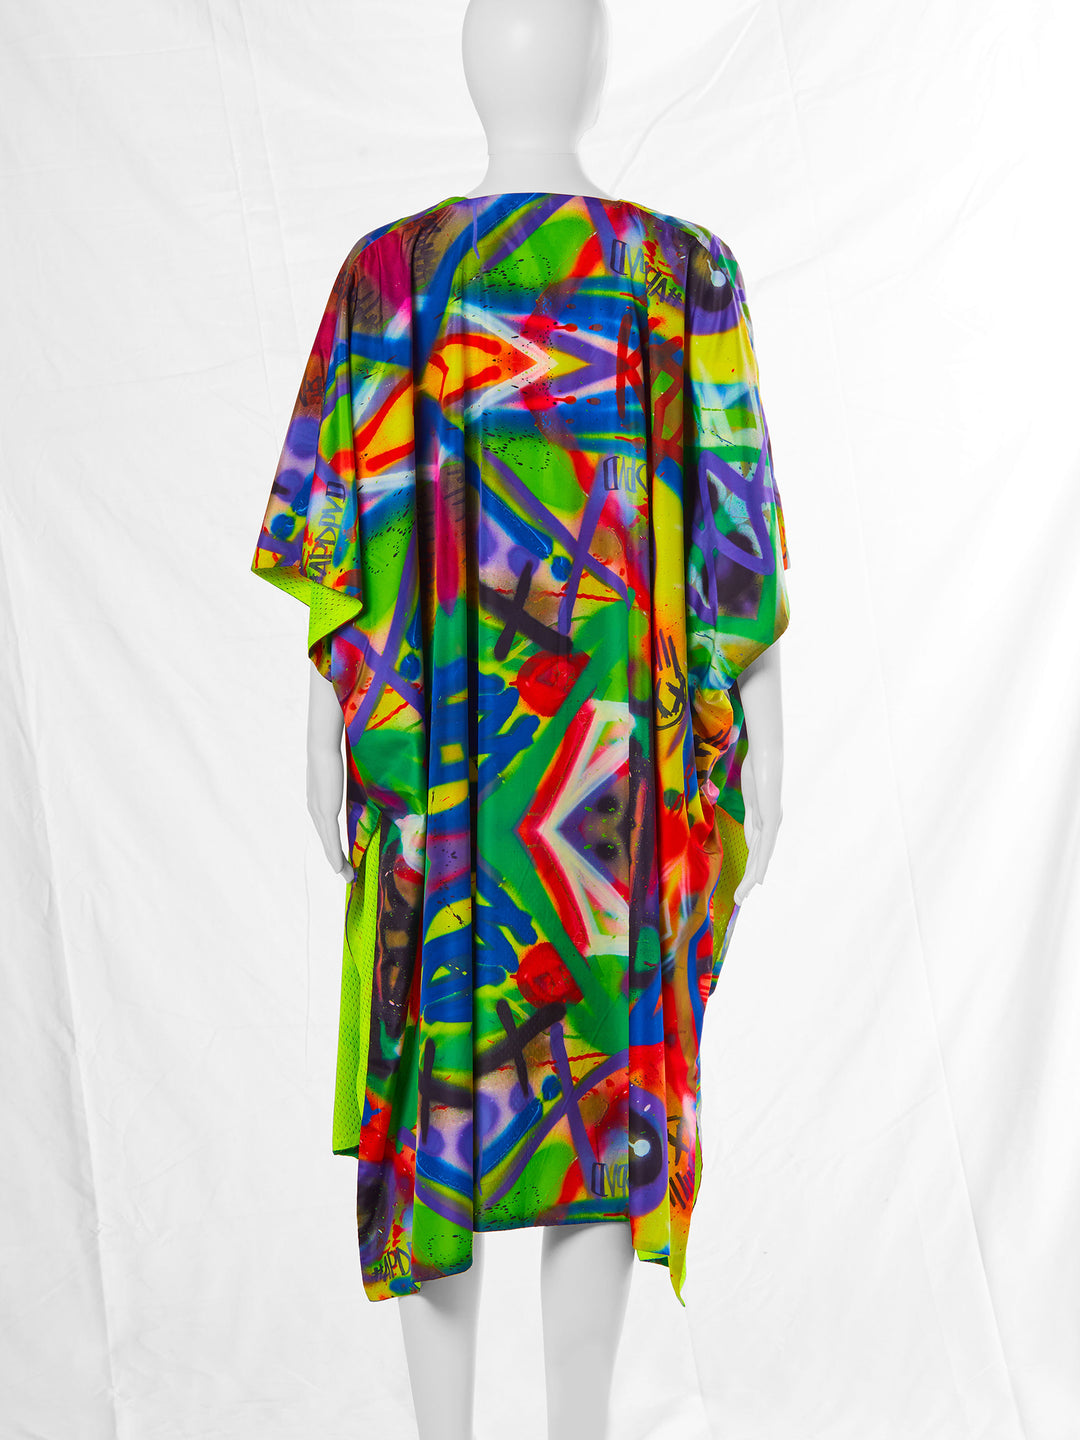 Reversible Kimono Shawl in Graffiti Print and Neon Mesh (20% OFF)